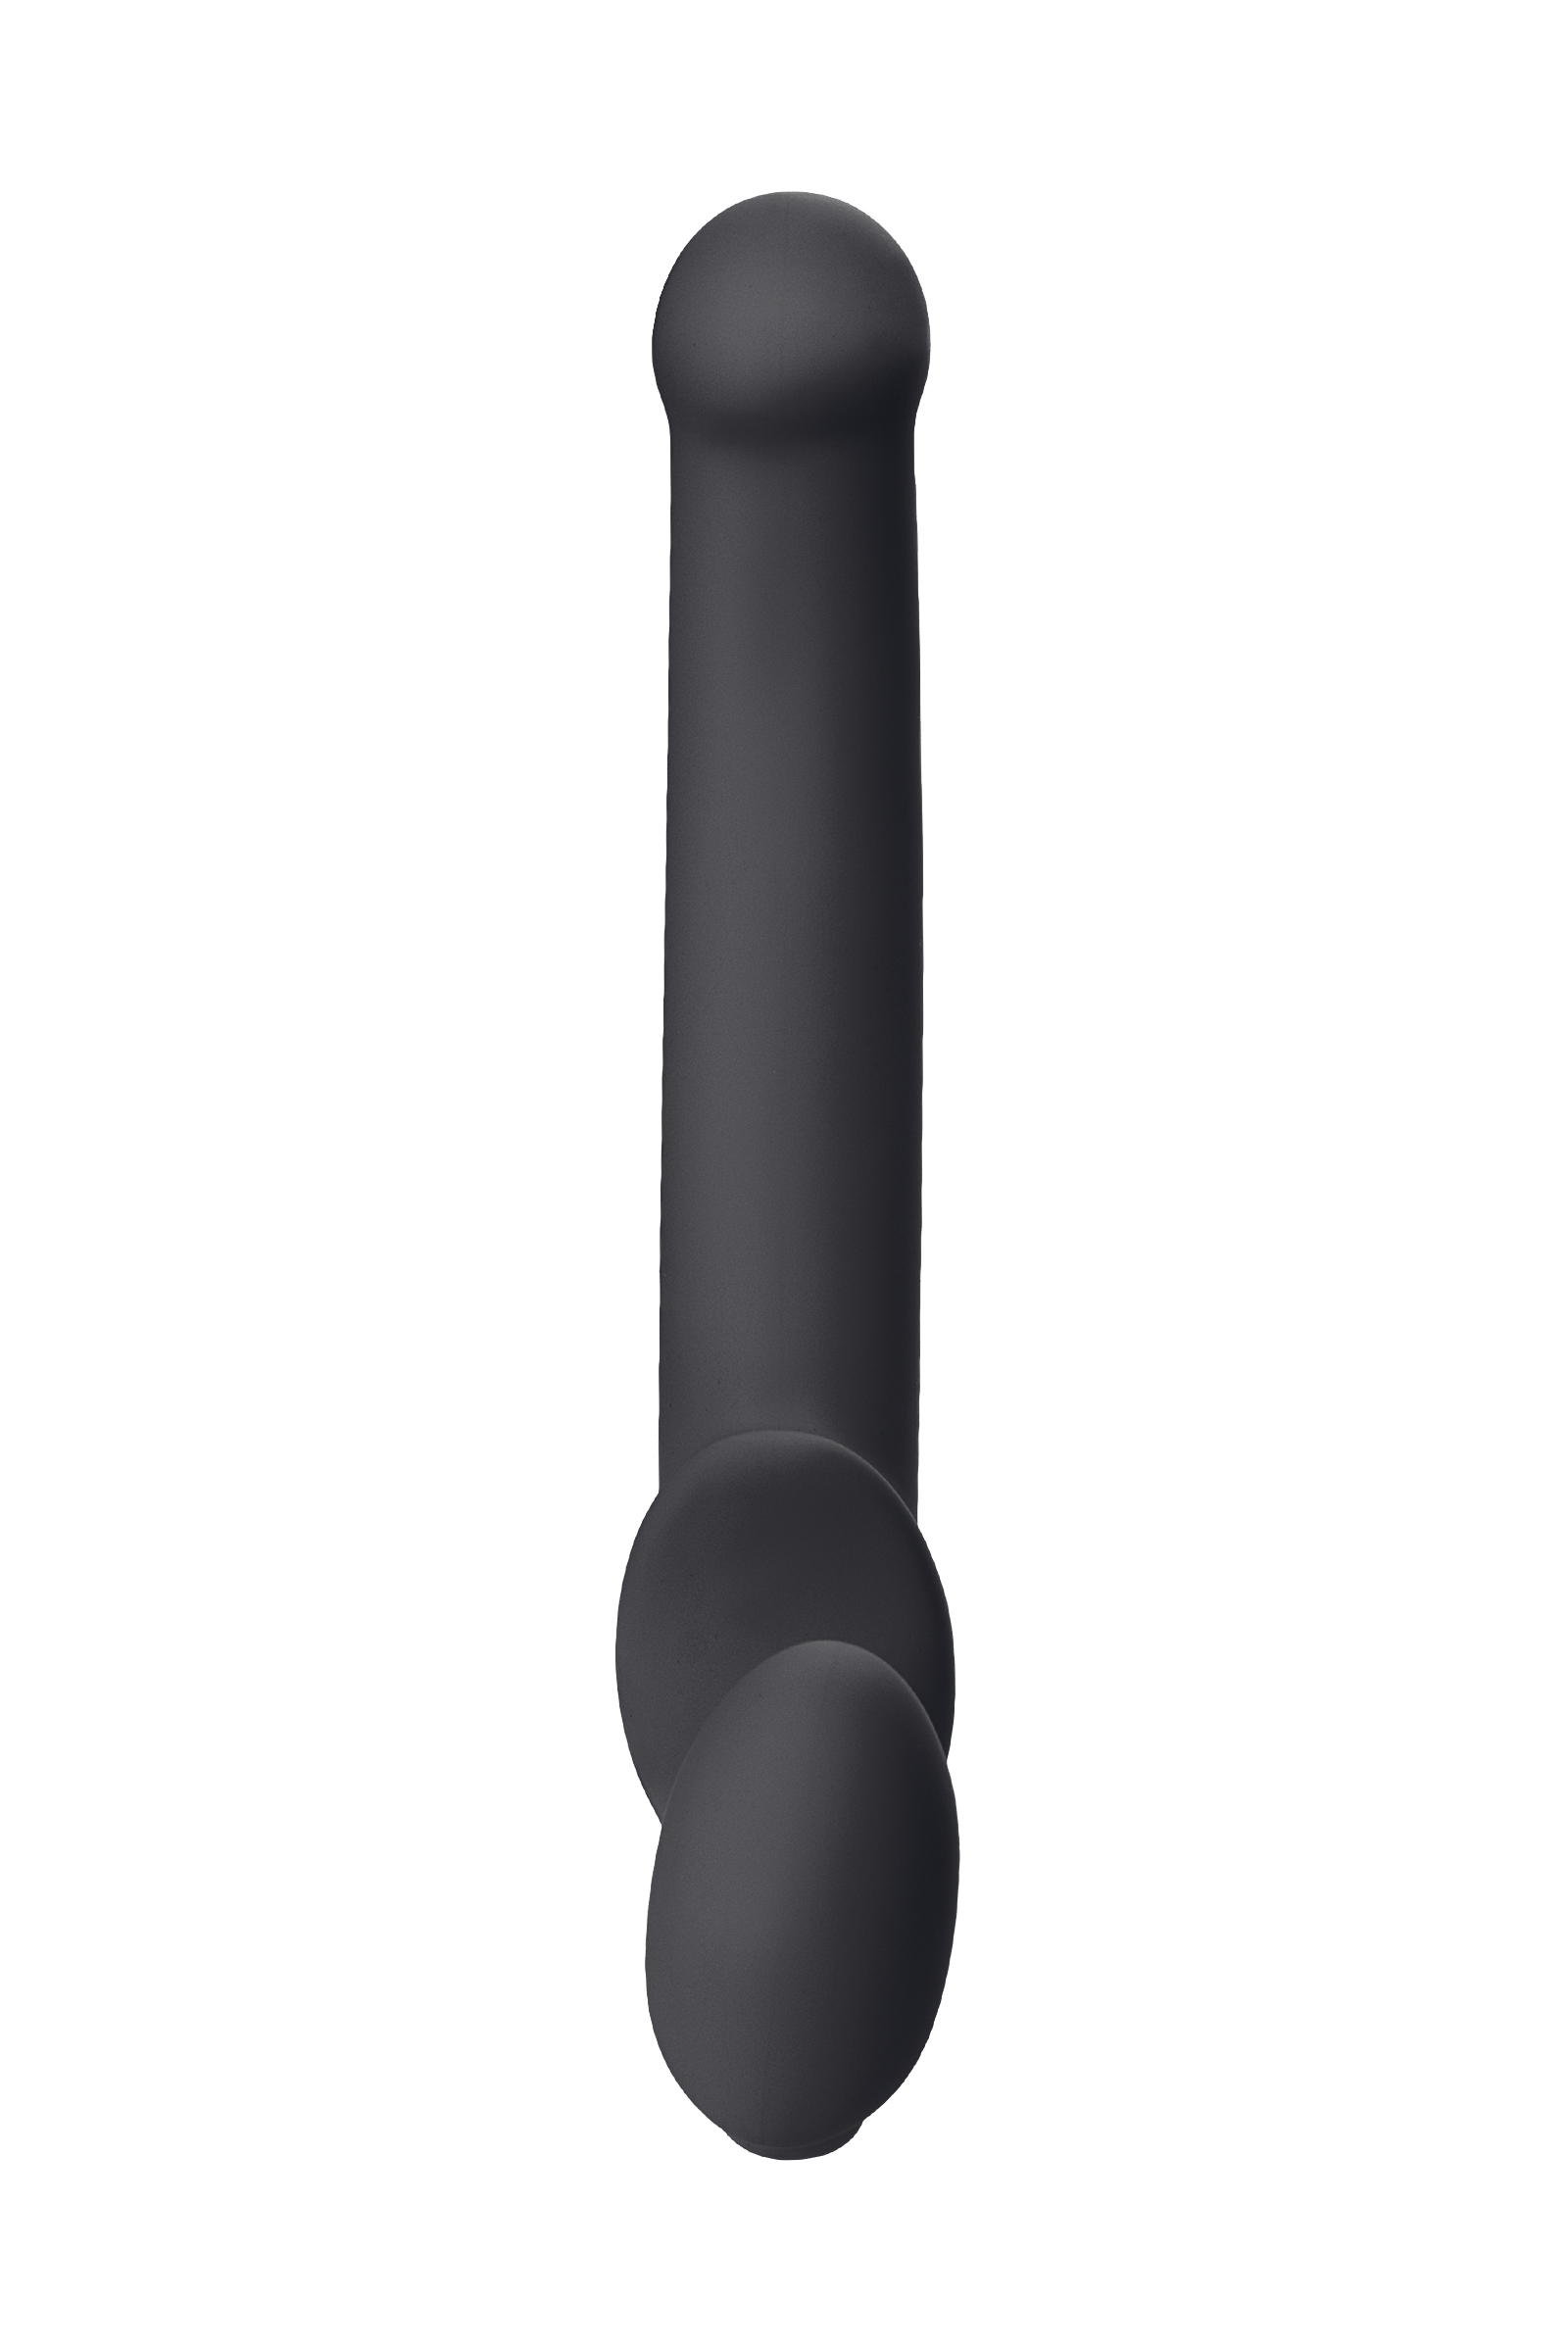 Безремневой нереалистичный страпон Strap-on-me, M, силикон, черный, 24,5 см. Фото N4